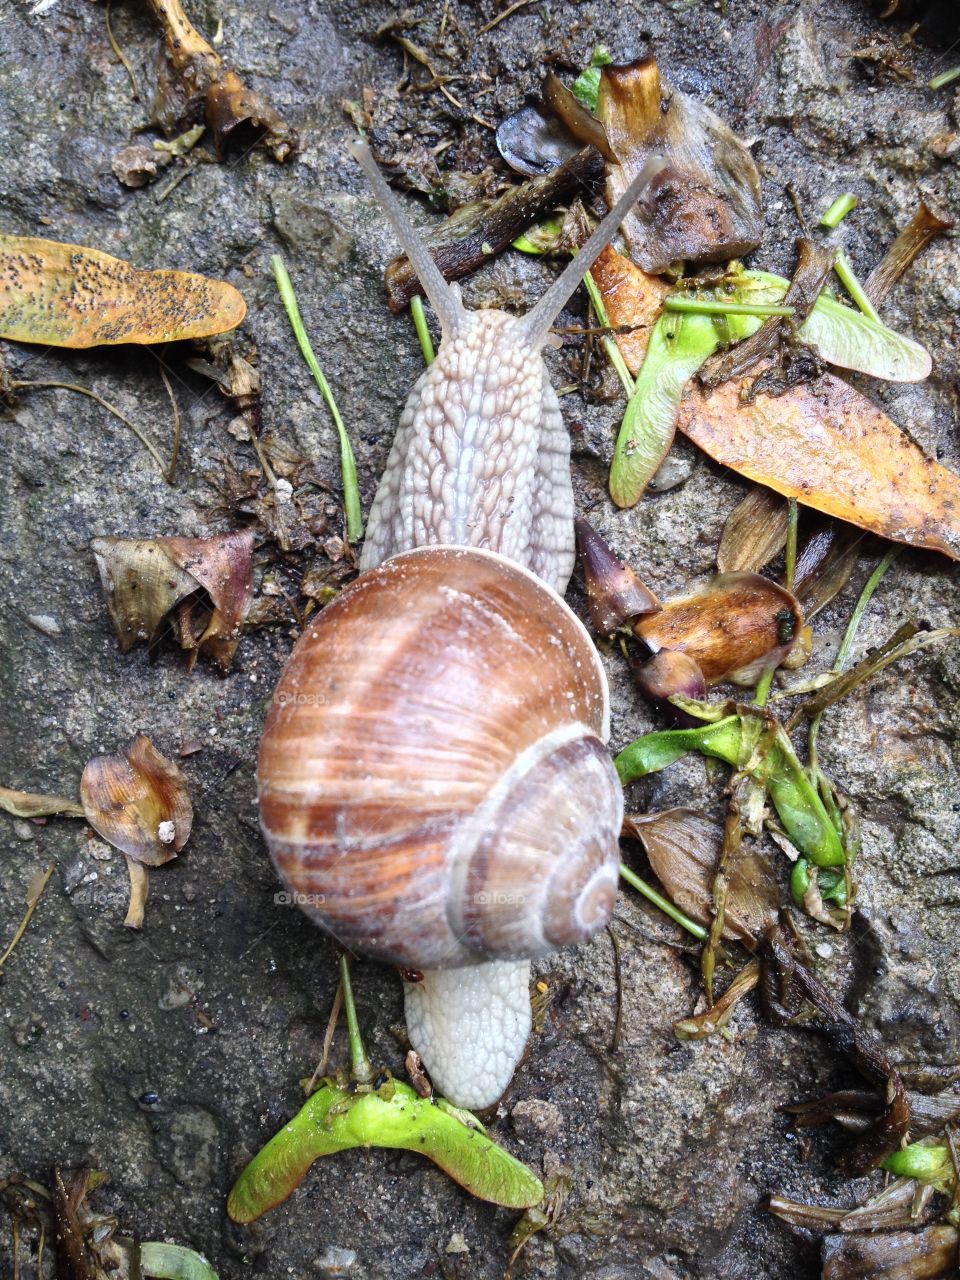 A snail #4. A snail #4